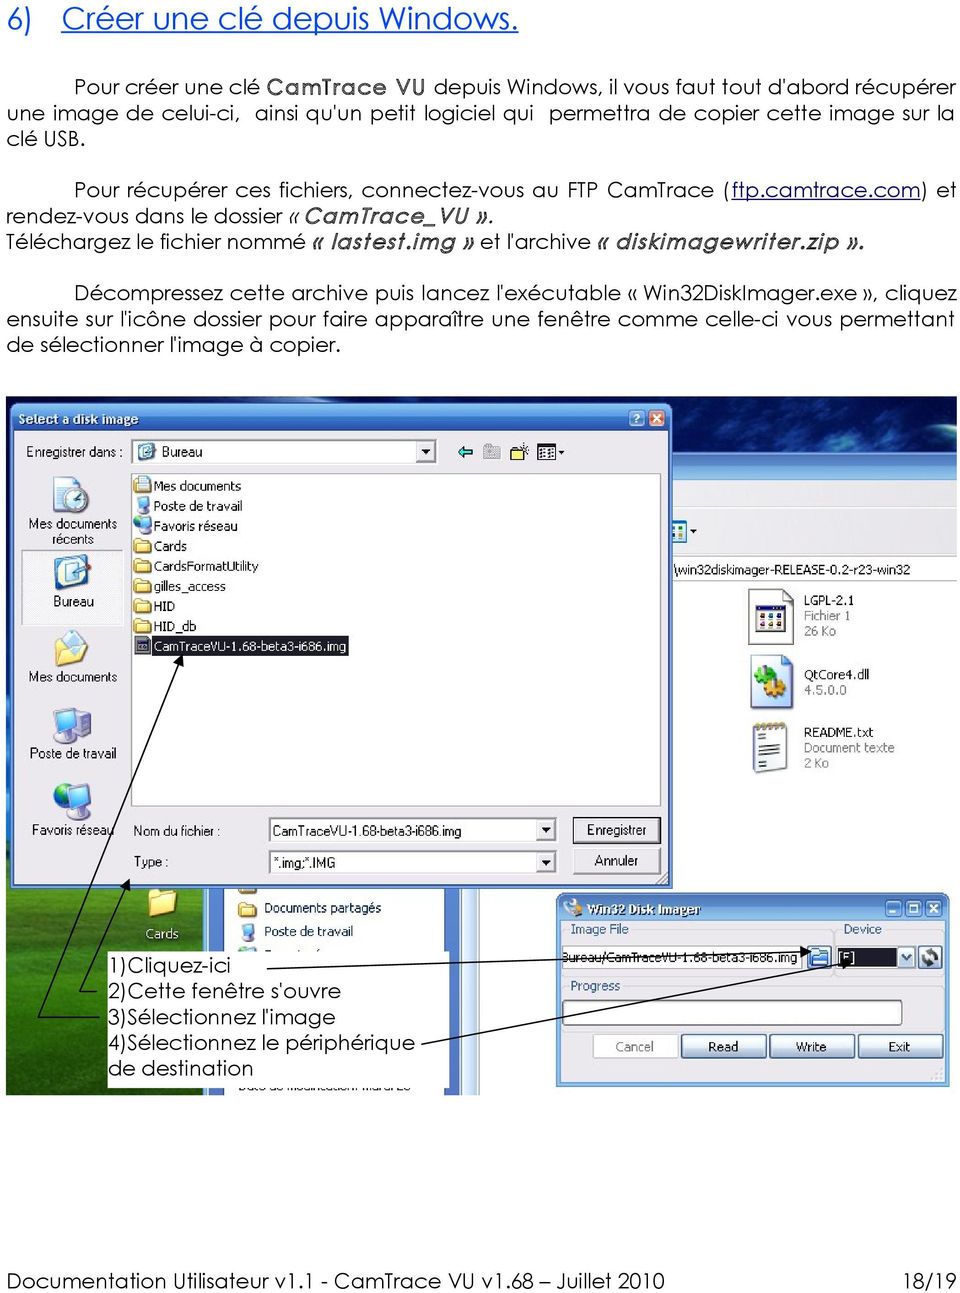 Pour récupérer ces fichiers, connectez-vous au FTP CamTrace (ftp.camtrace.com) et rendez-vous dans le dossier «CamTrace_VU». Téléchargez le fichier nommé «lastest.